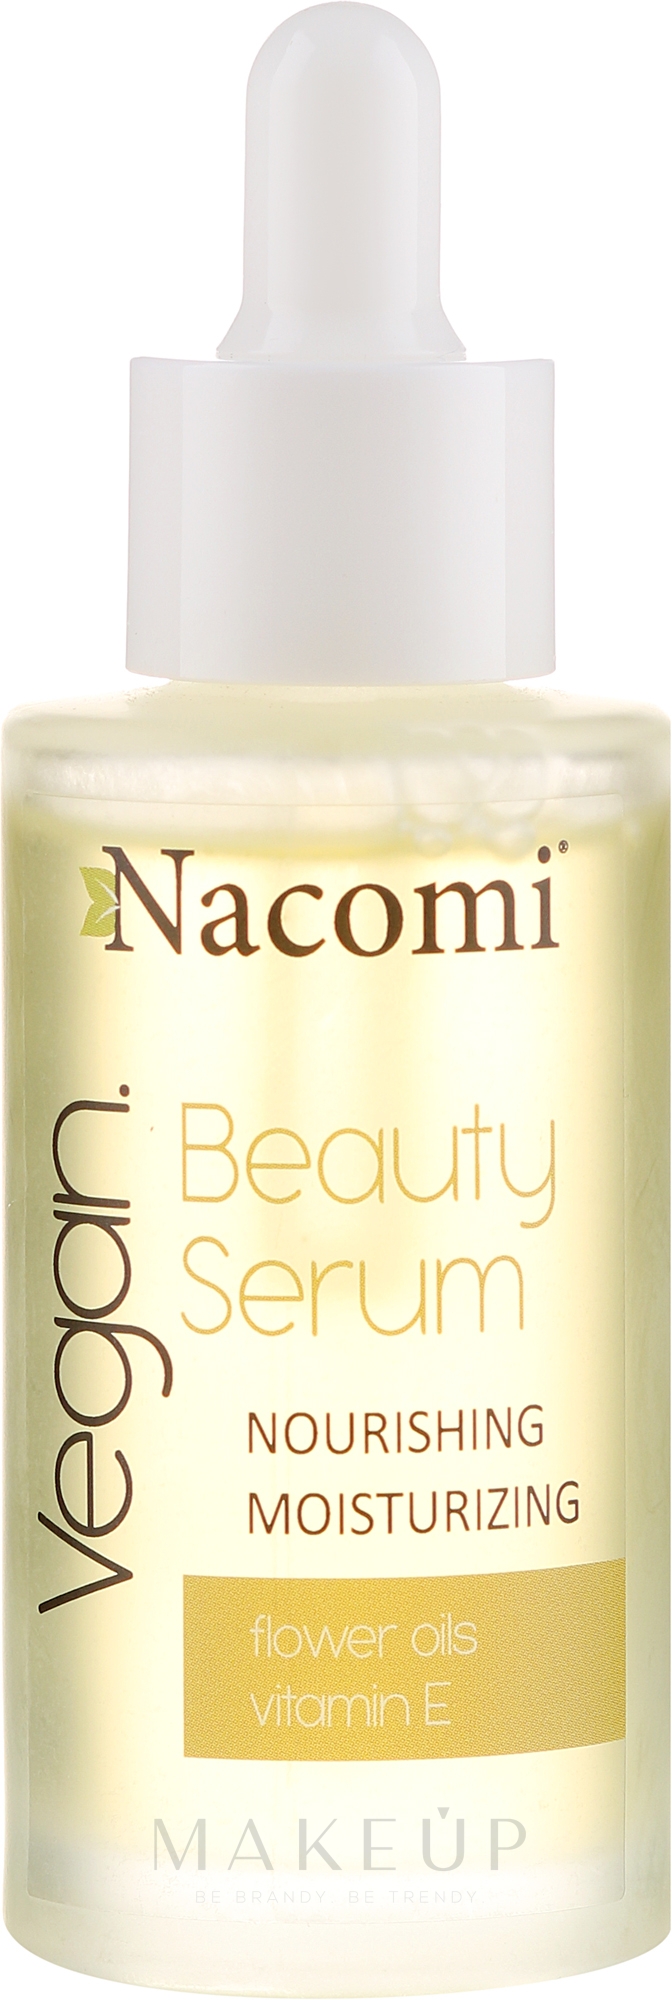 Nährendes und feuchtigkeitsspendendes Gesichtsserum mit Vitamin E - Nacomi Beauty Serum Nourishing & Moisturizing Serum — Bild 40 ml